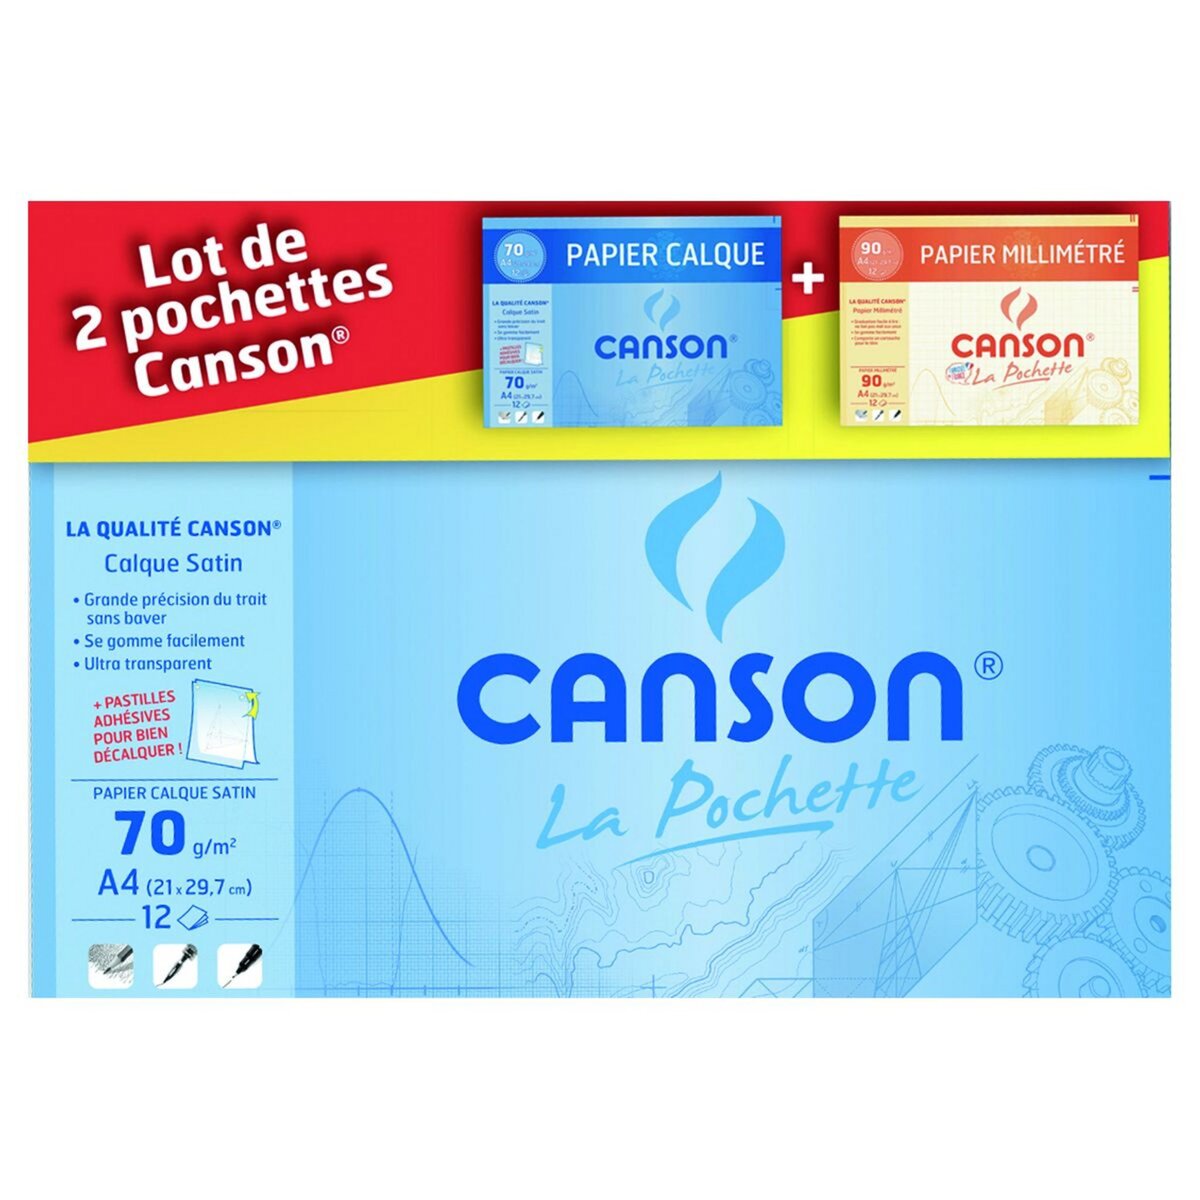 CANSON Lot de 1 pochette papier calque 12 feuilles A4 70g/m² + 1